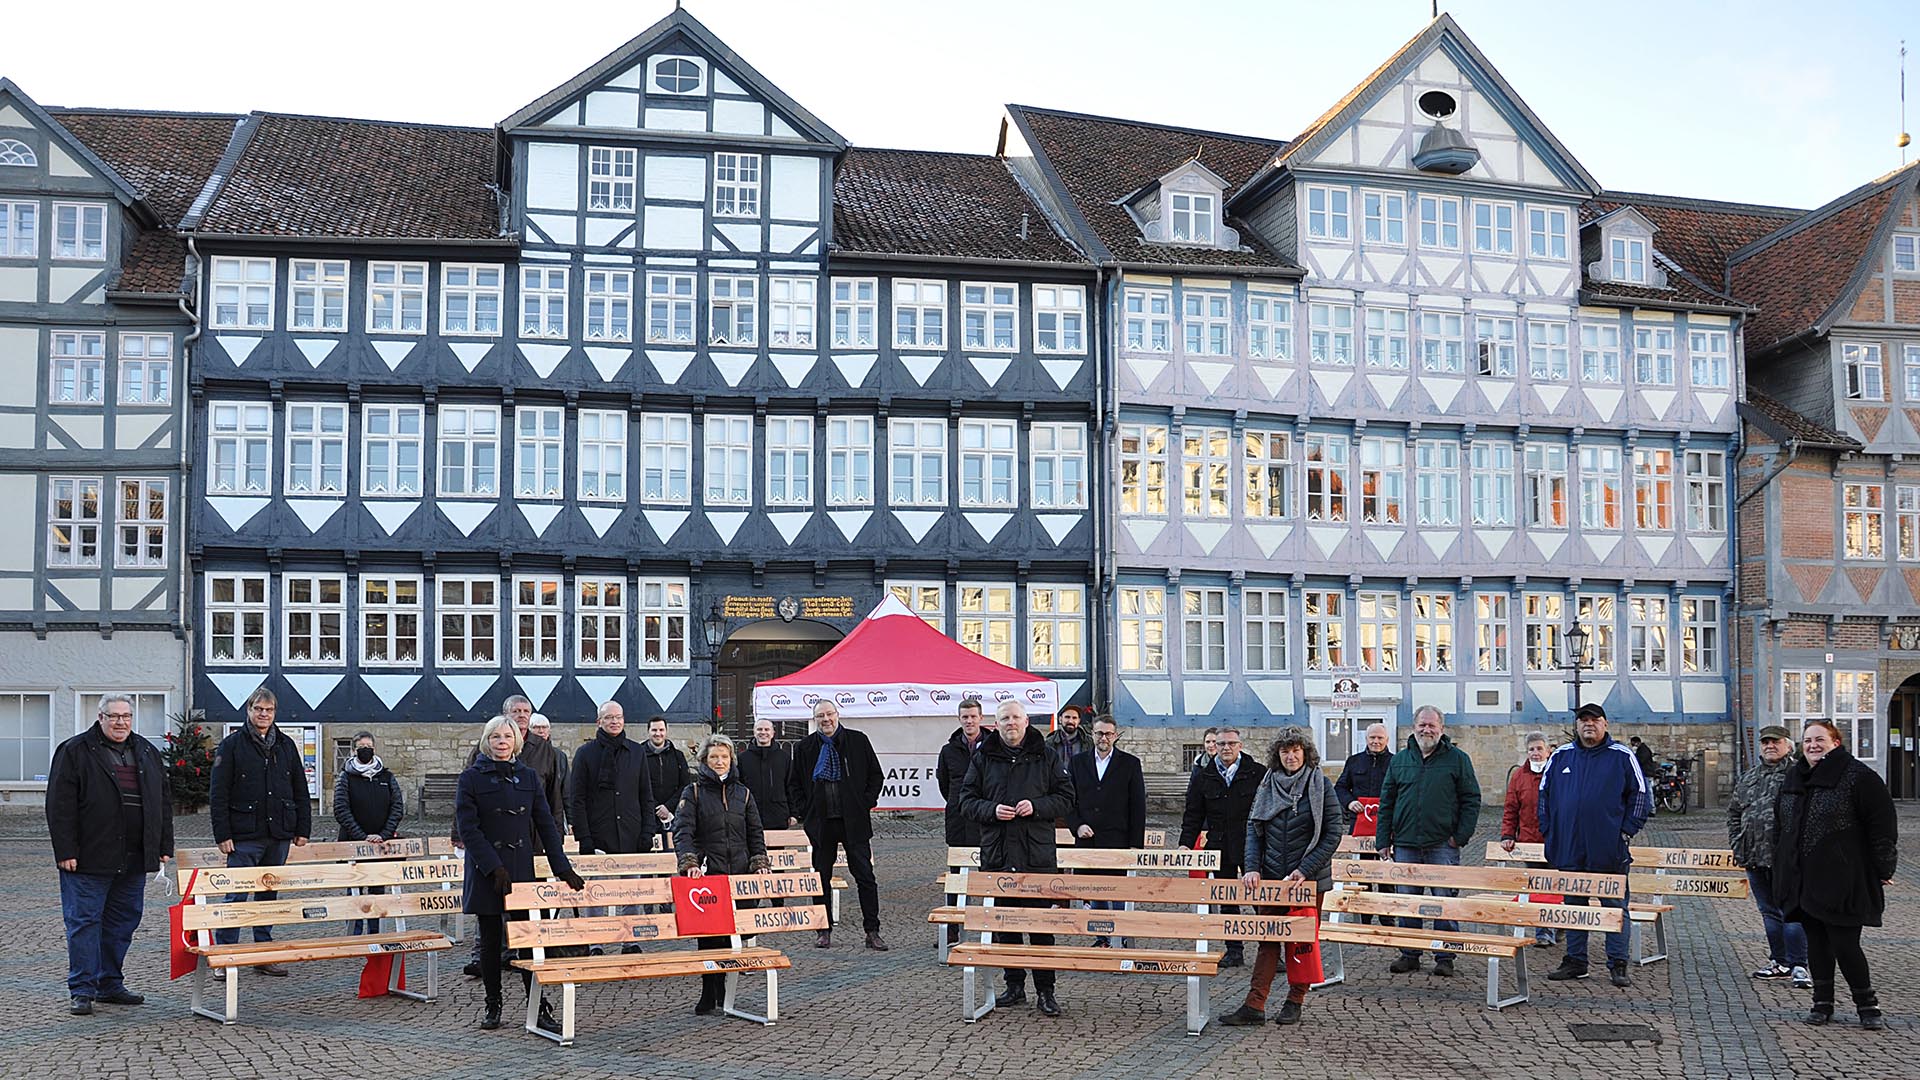 Viele Menschen stehen verteilt auf dem Stadtmarkt vor dem Rathaus, zwischen ihnen stehen Holzbänke mit der Aufschrift Kein Platz für Rassismus.